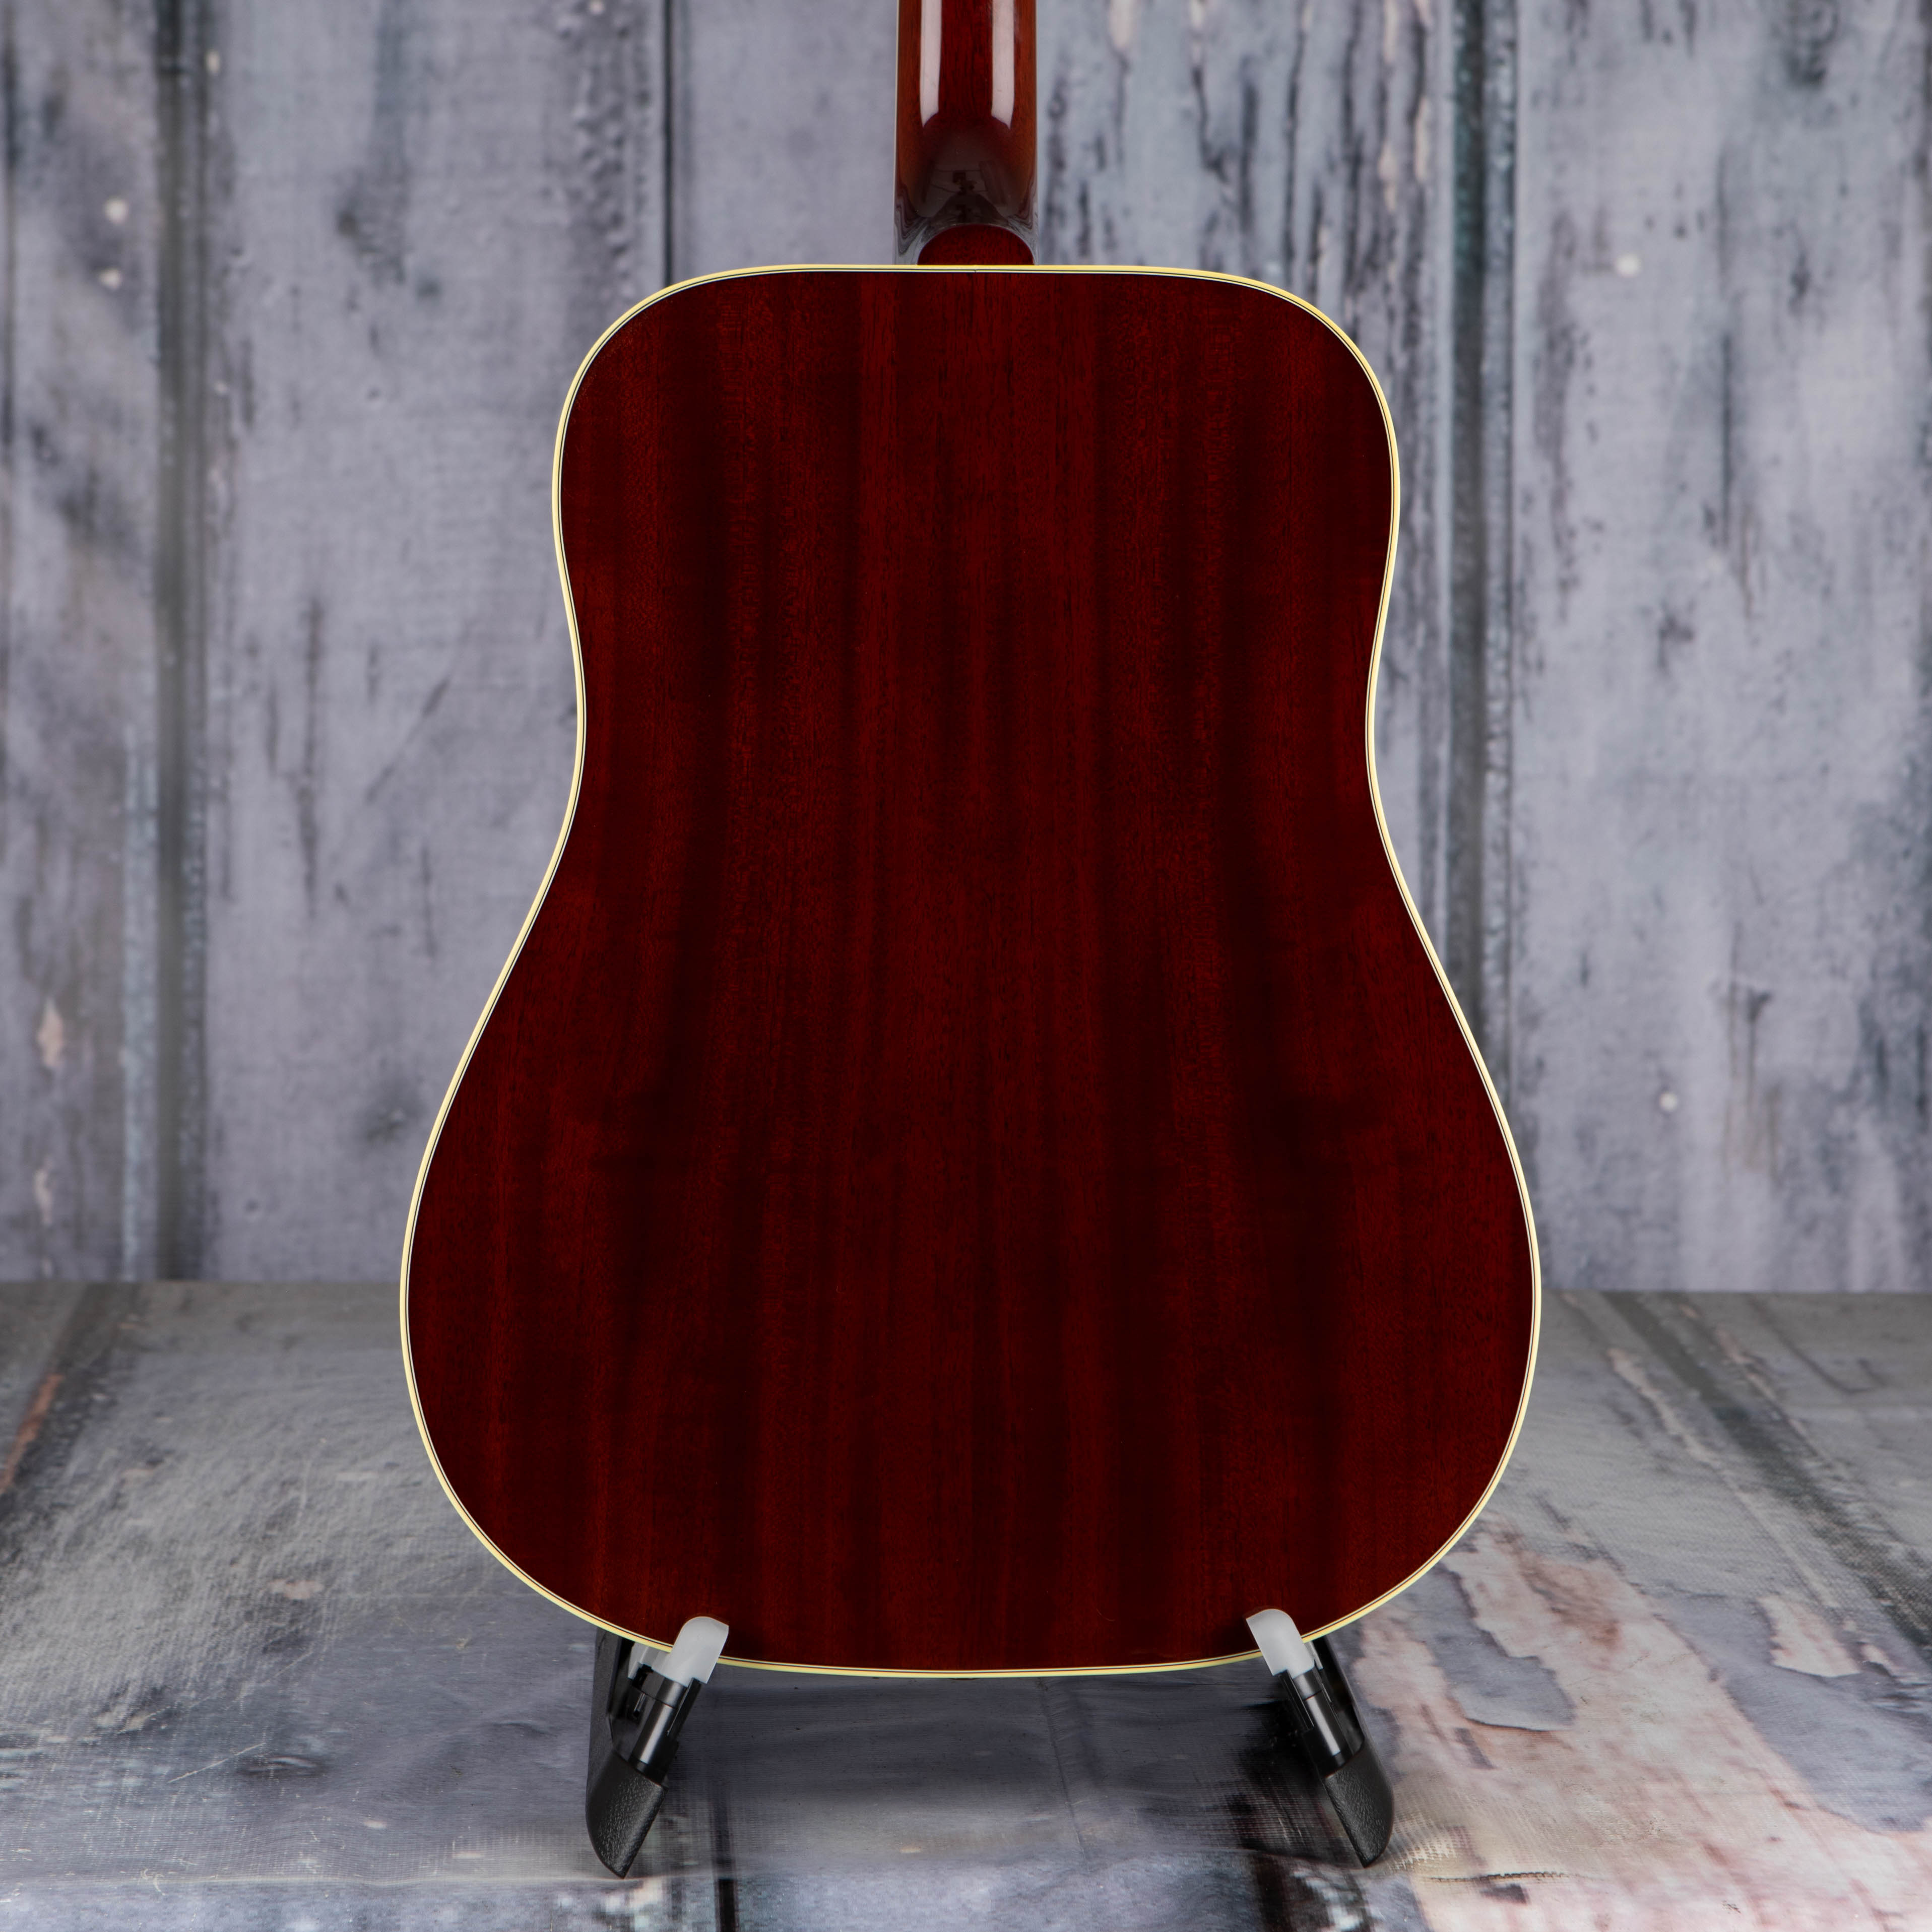 Gibson Montana Hummingbird Original Acoustic/Electric Guitar, Antique Natural, back closeup